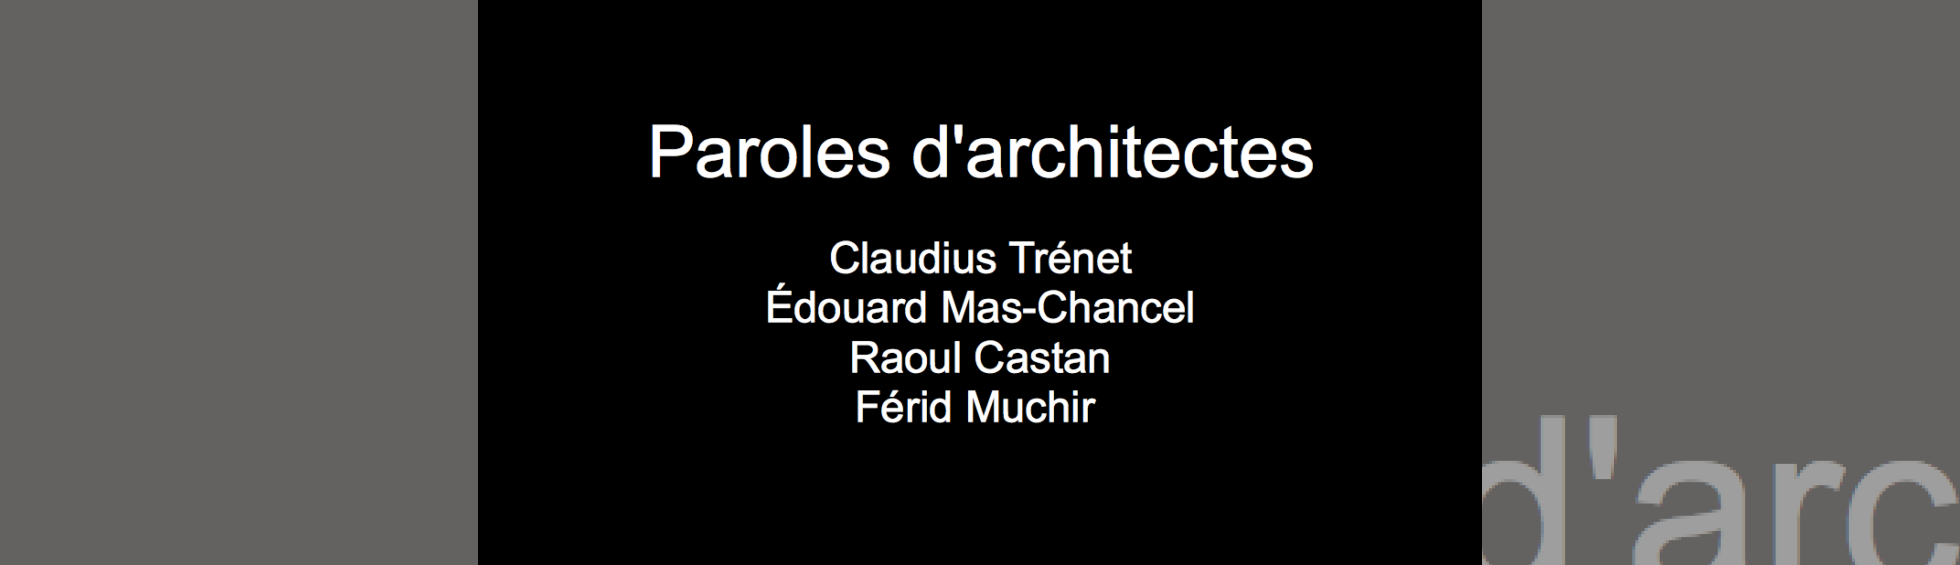 Paroles d'architectes : Claudius Trénet, Raoul Castan, Édouard Mas-Chancel, Férid Muchir.